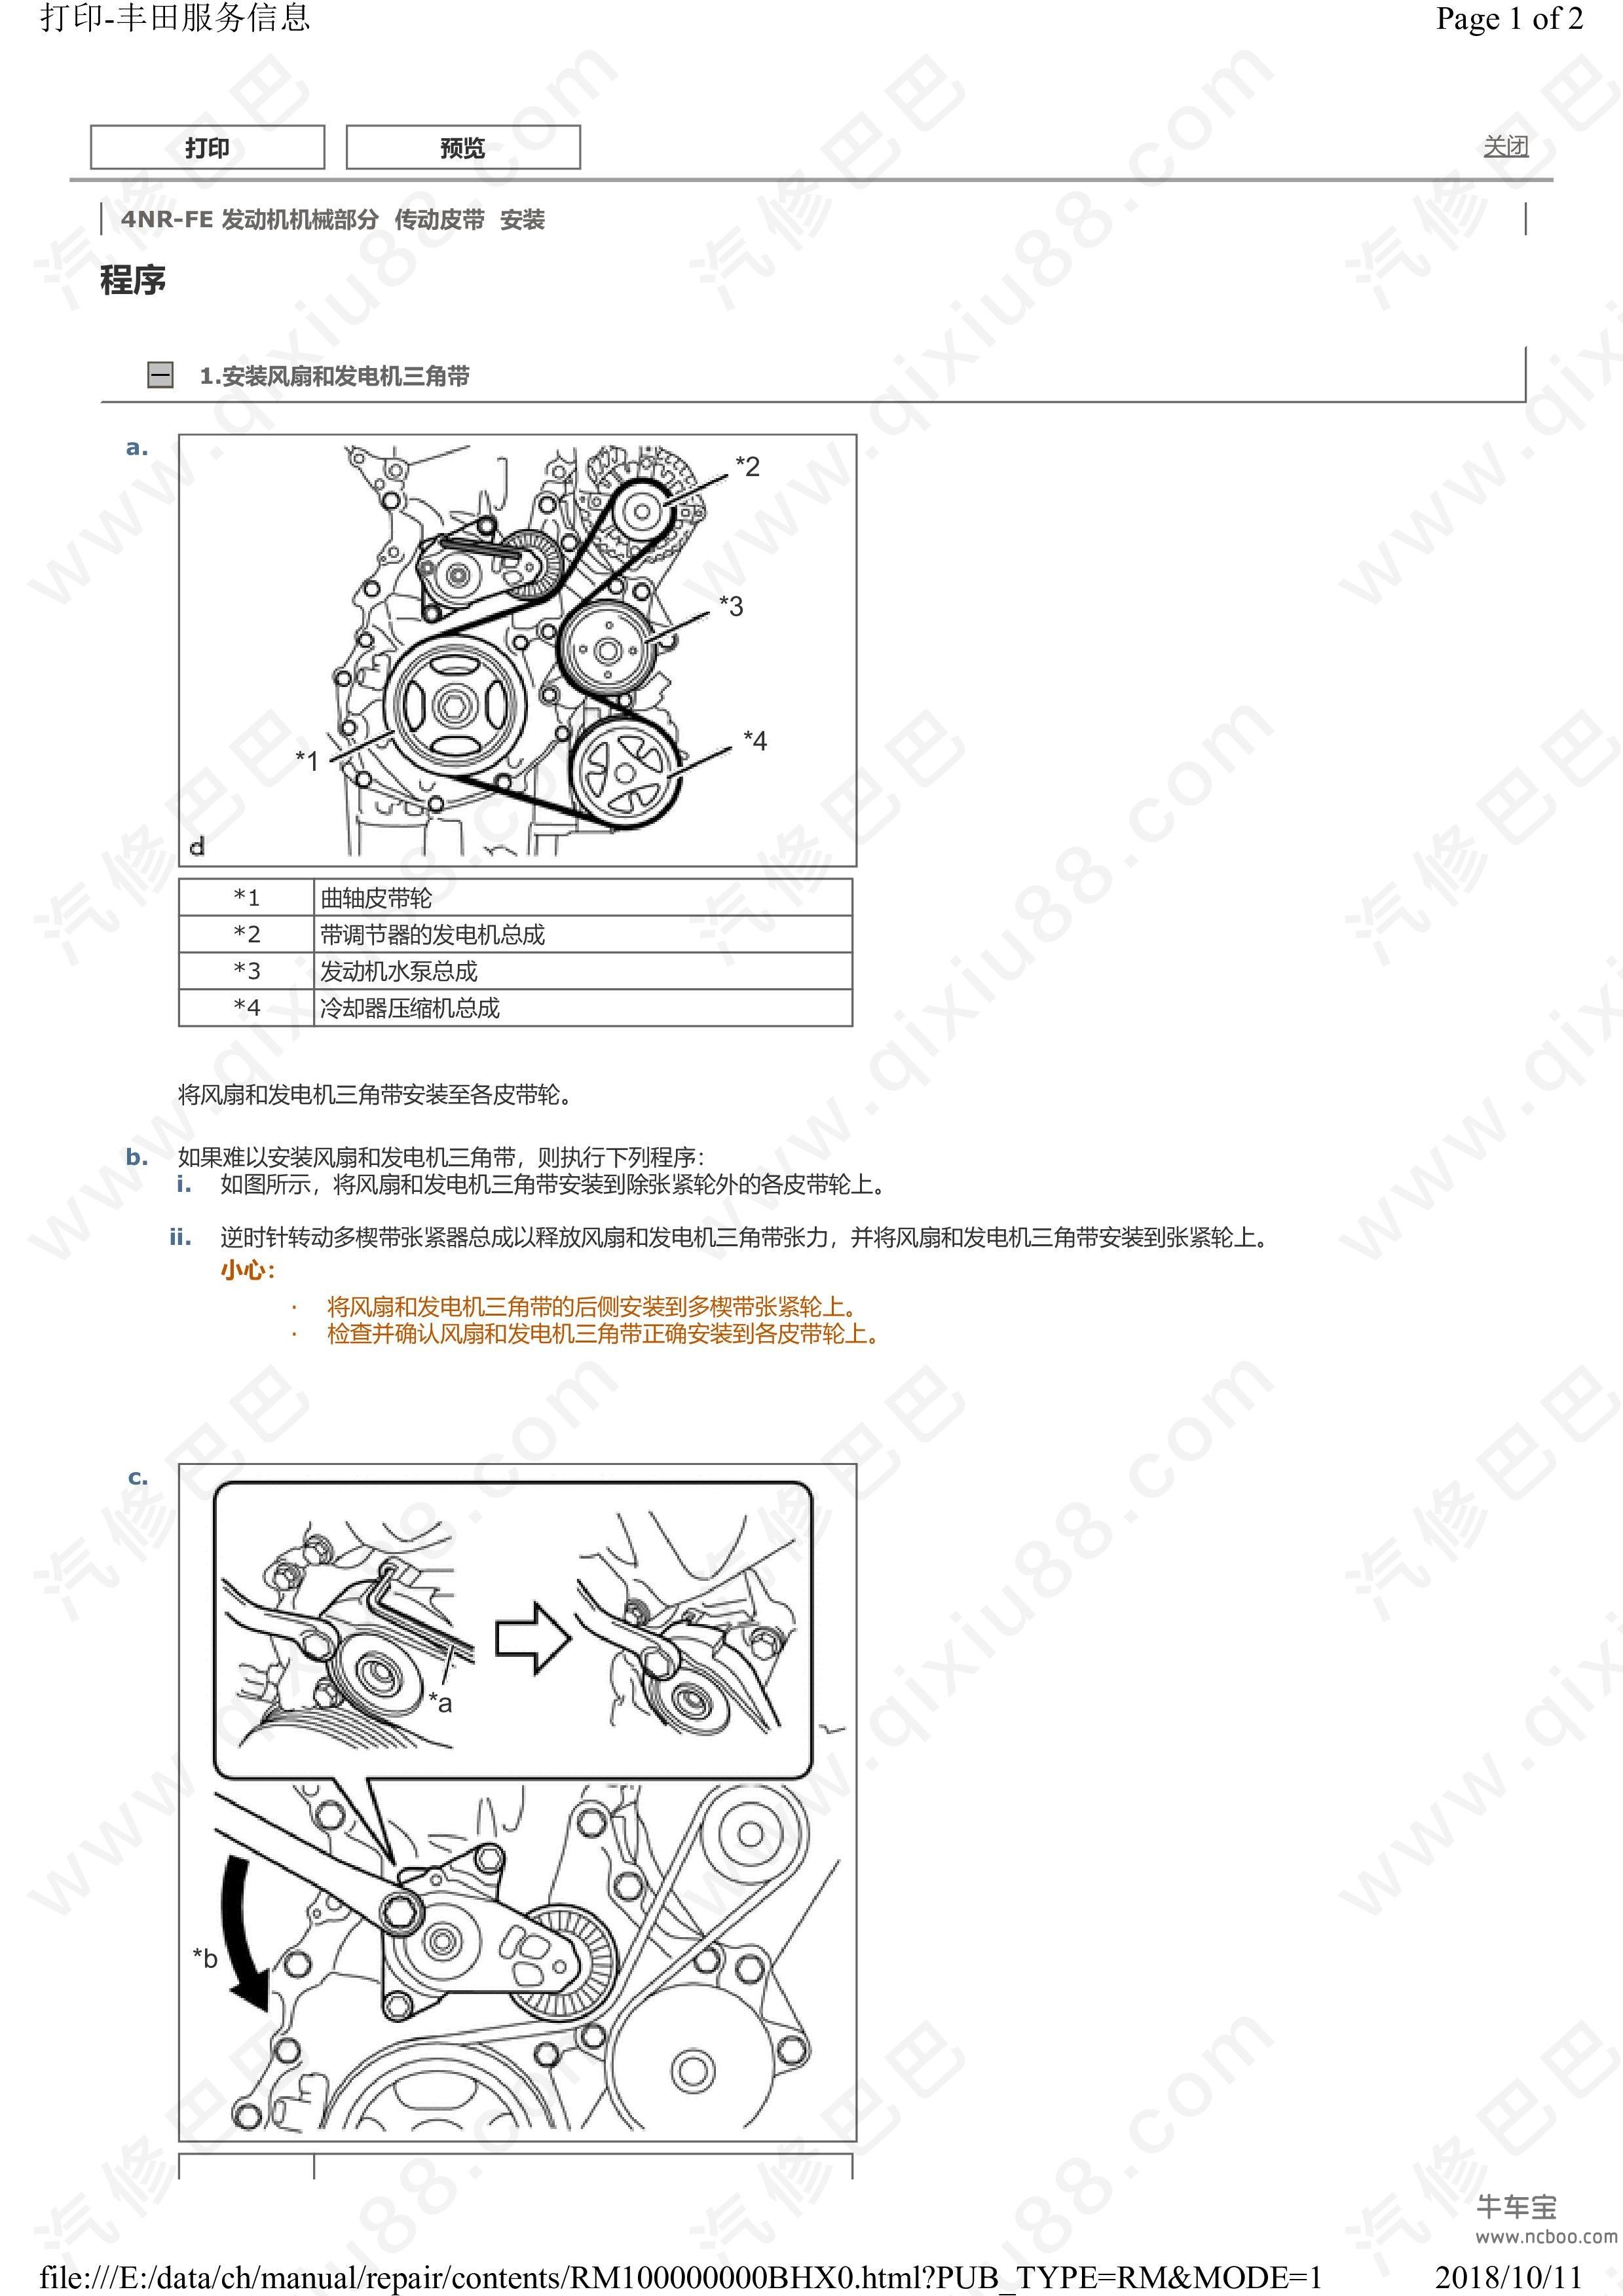 丰田威驰发动机 混合动力系统维修手册和线路图